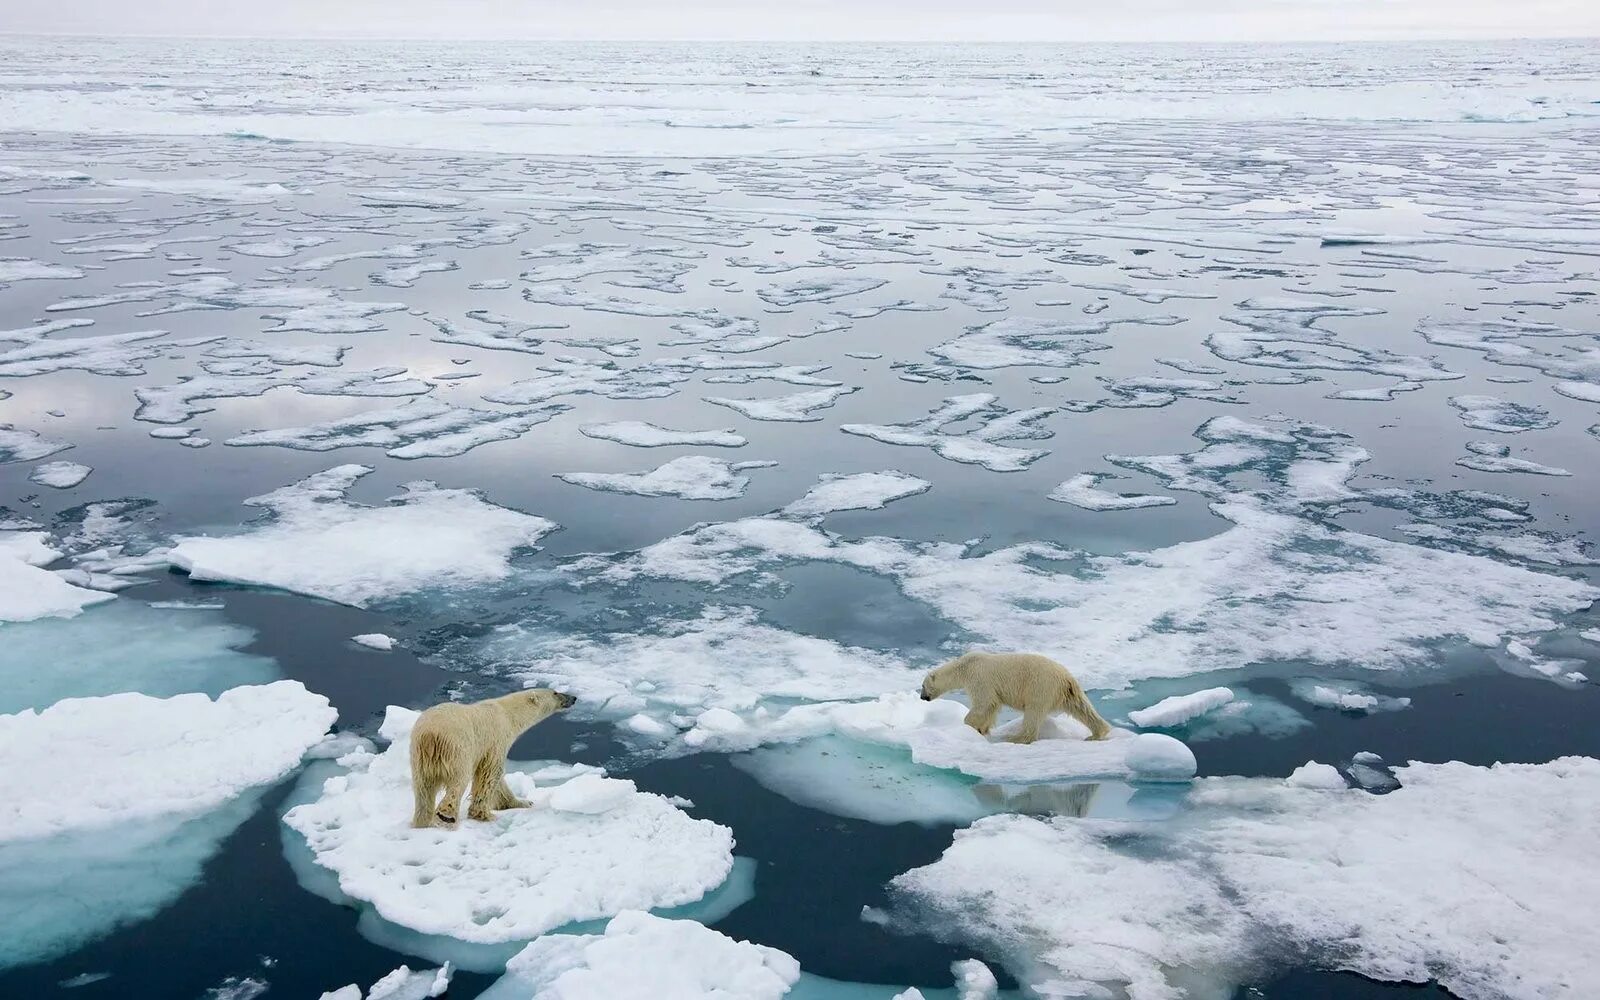 Говори потепление. Арктика Северный Ледовитый океан. • Арктика — таяние арктических льдов,. Северный Ледовитый океан и Антарктида. Северный Ледовитый океан белый медведь.